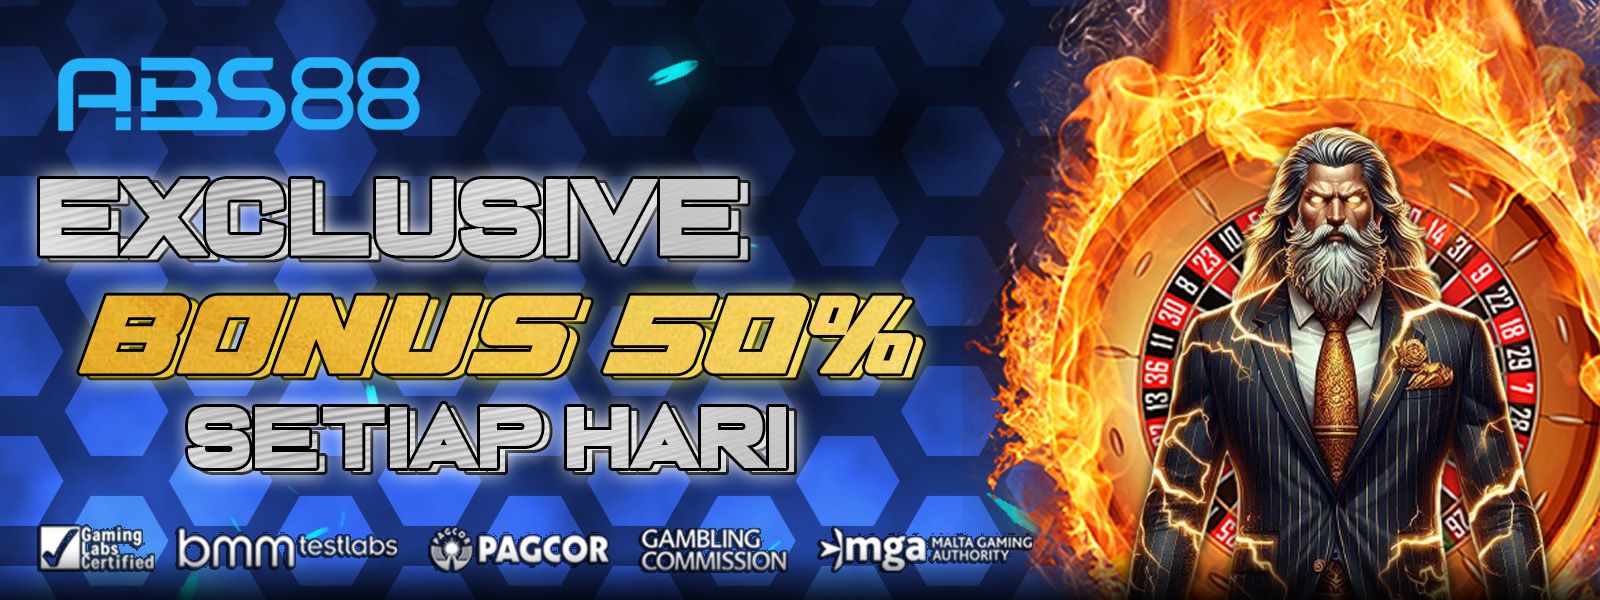 EXCLUSIVE BONUS 50% SETIAP HARI HANYA DI ABS88 